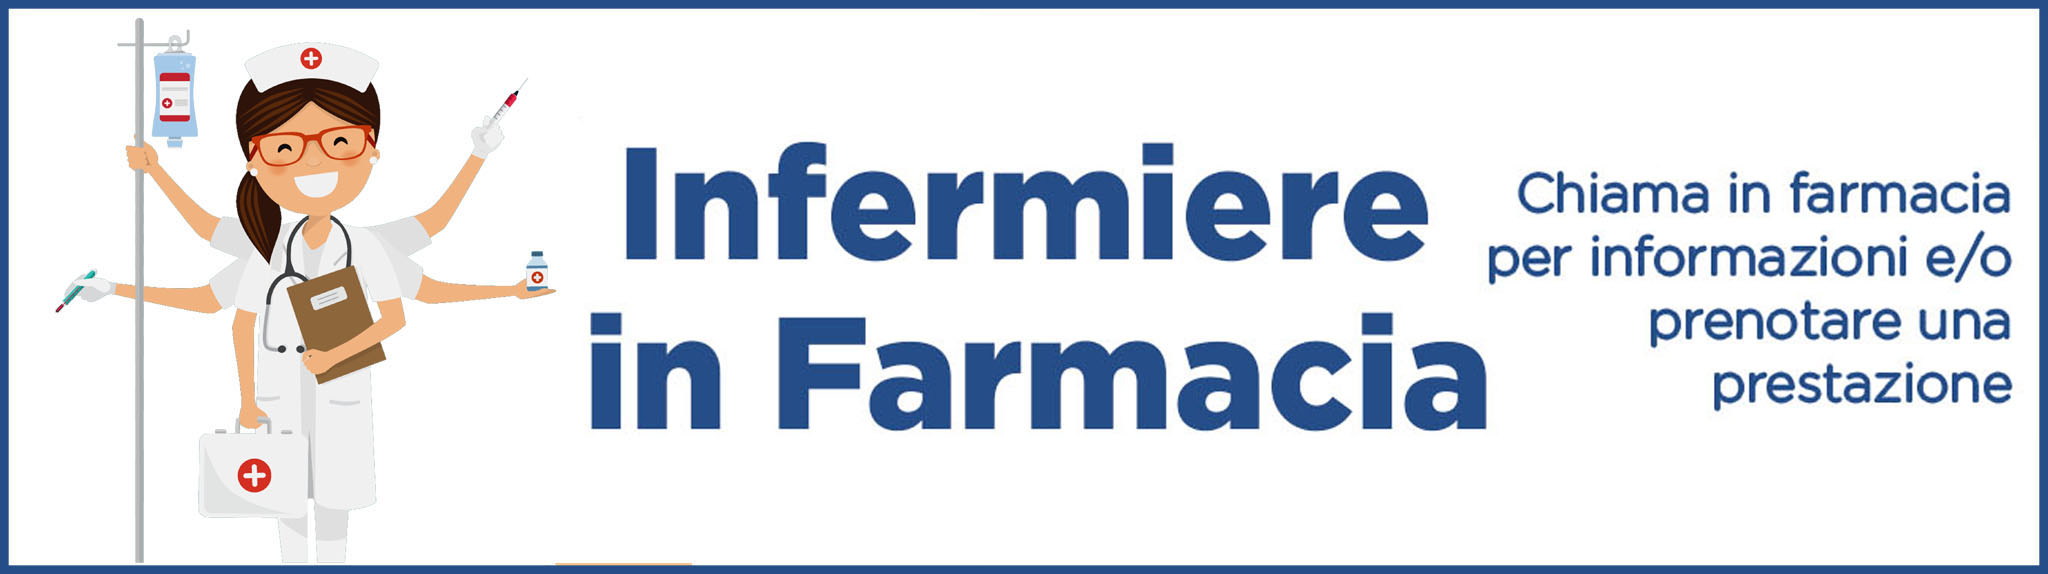 Infermiere_IN_Farmacia